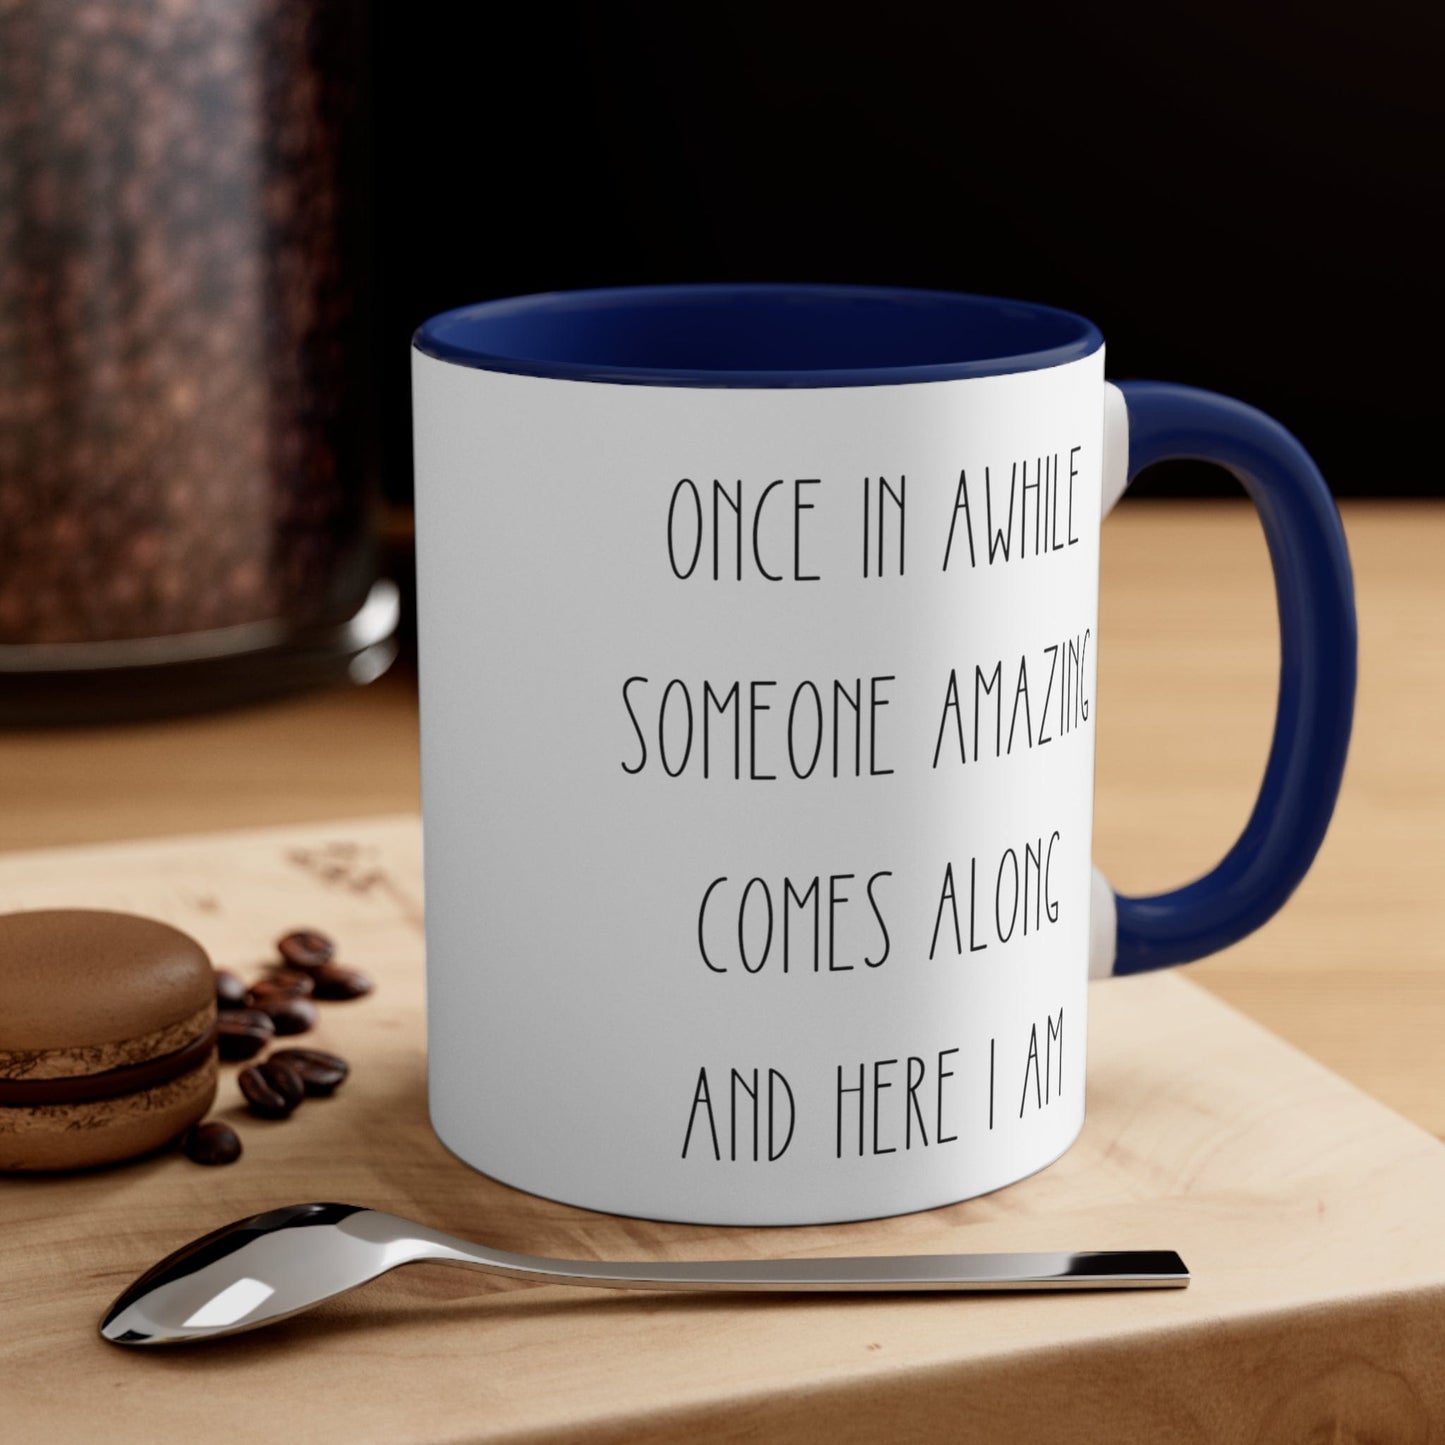 Funny Sarcastic Coffee Mug